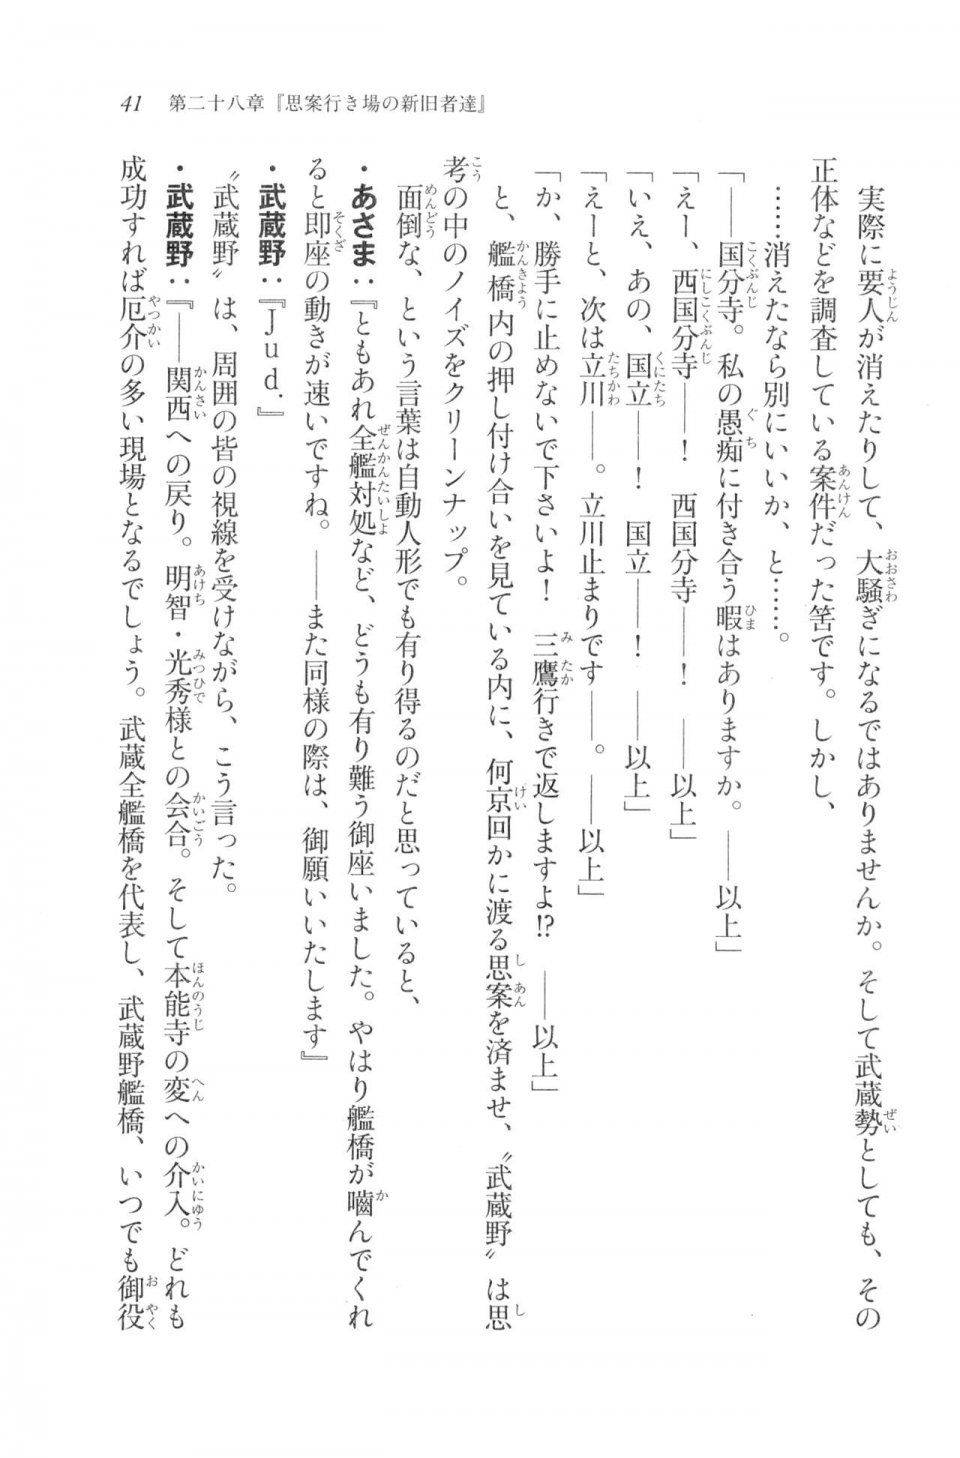 Kyoukai Senjou no Horizon LN Vol 20(8B) - Photo #41